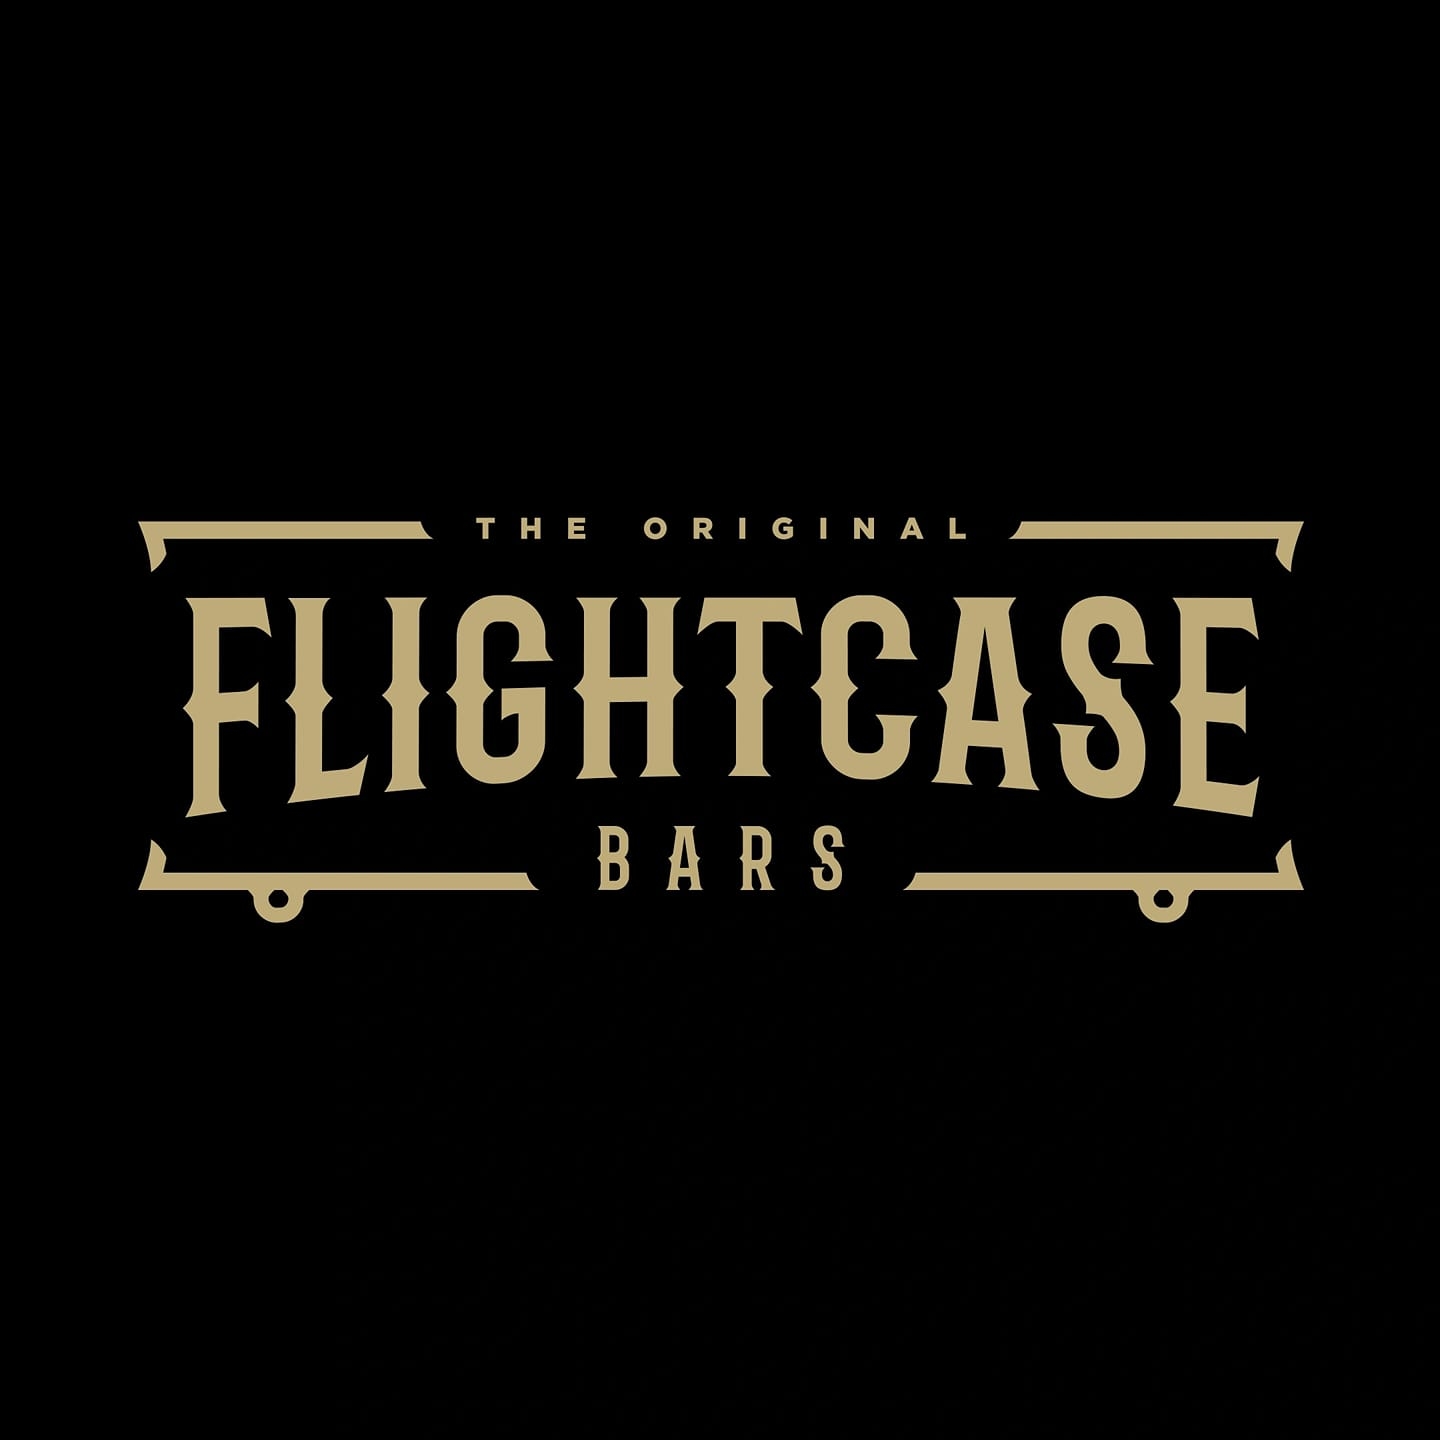 Flight case